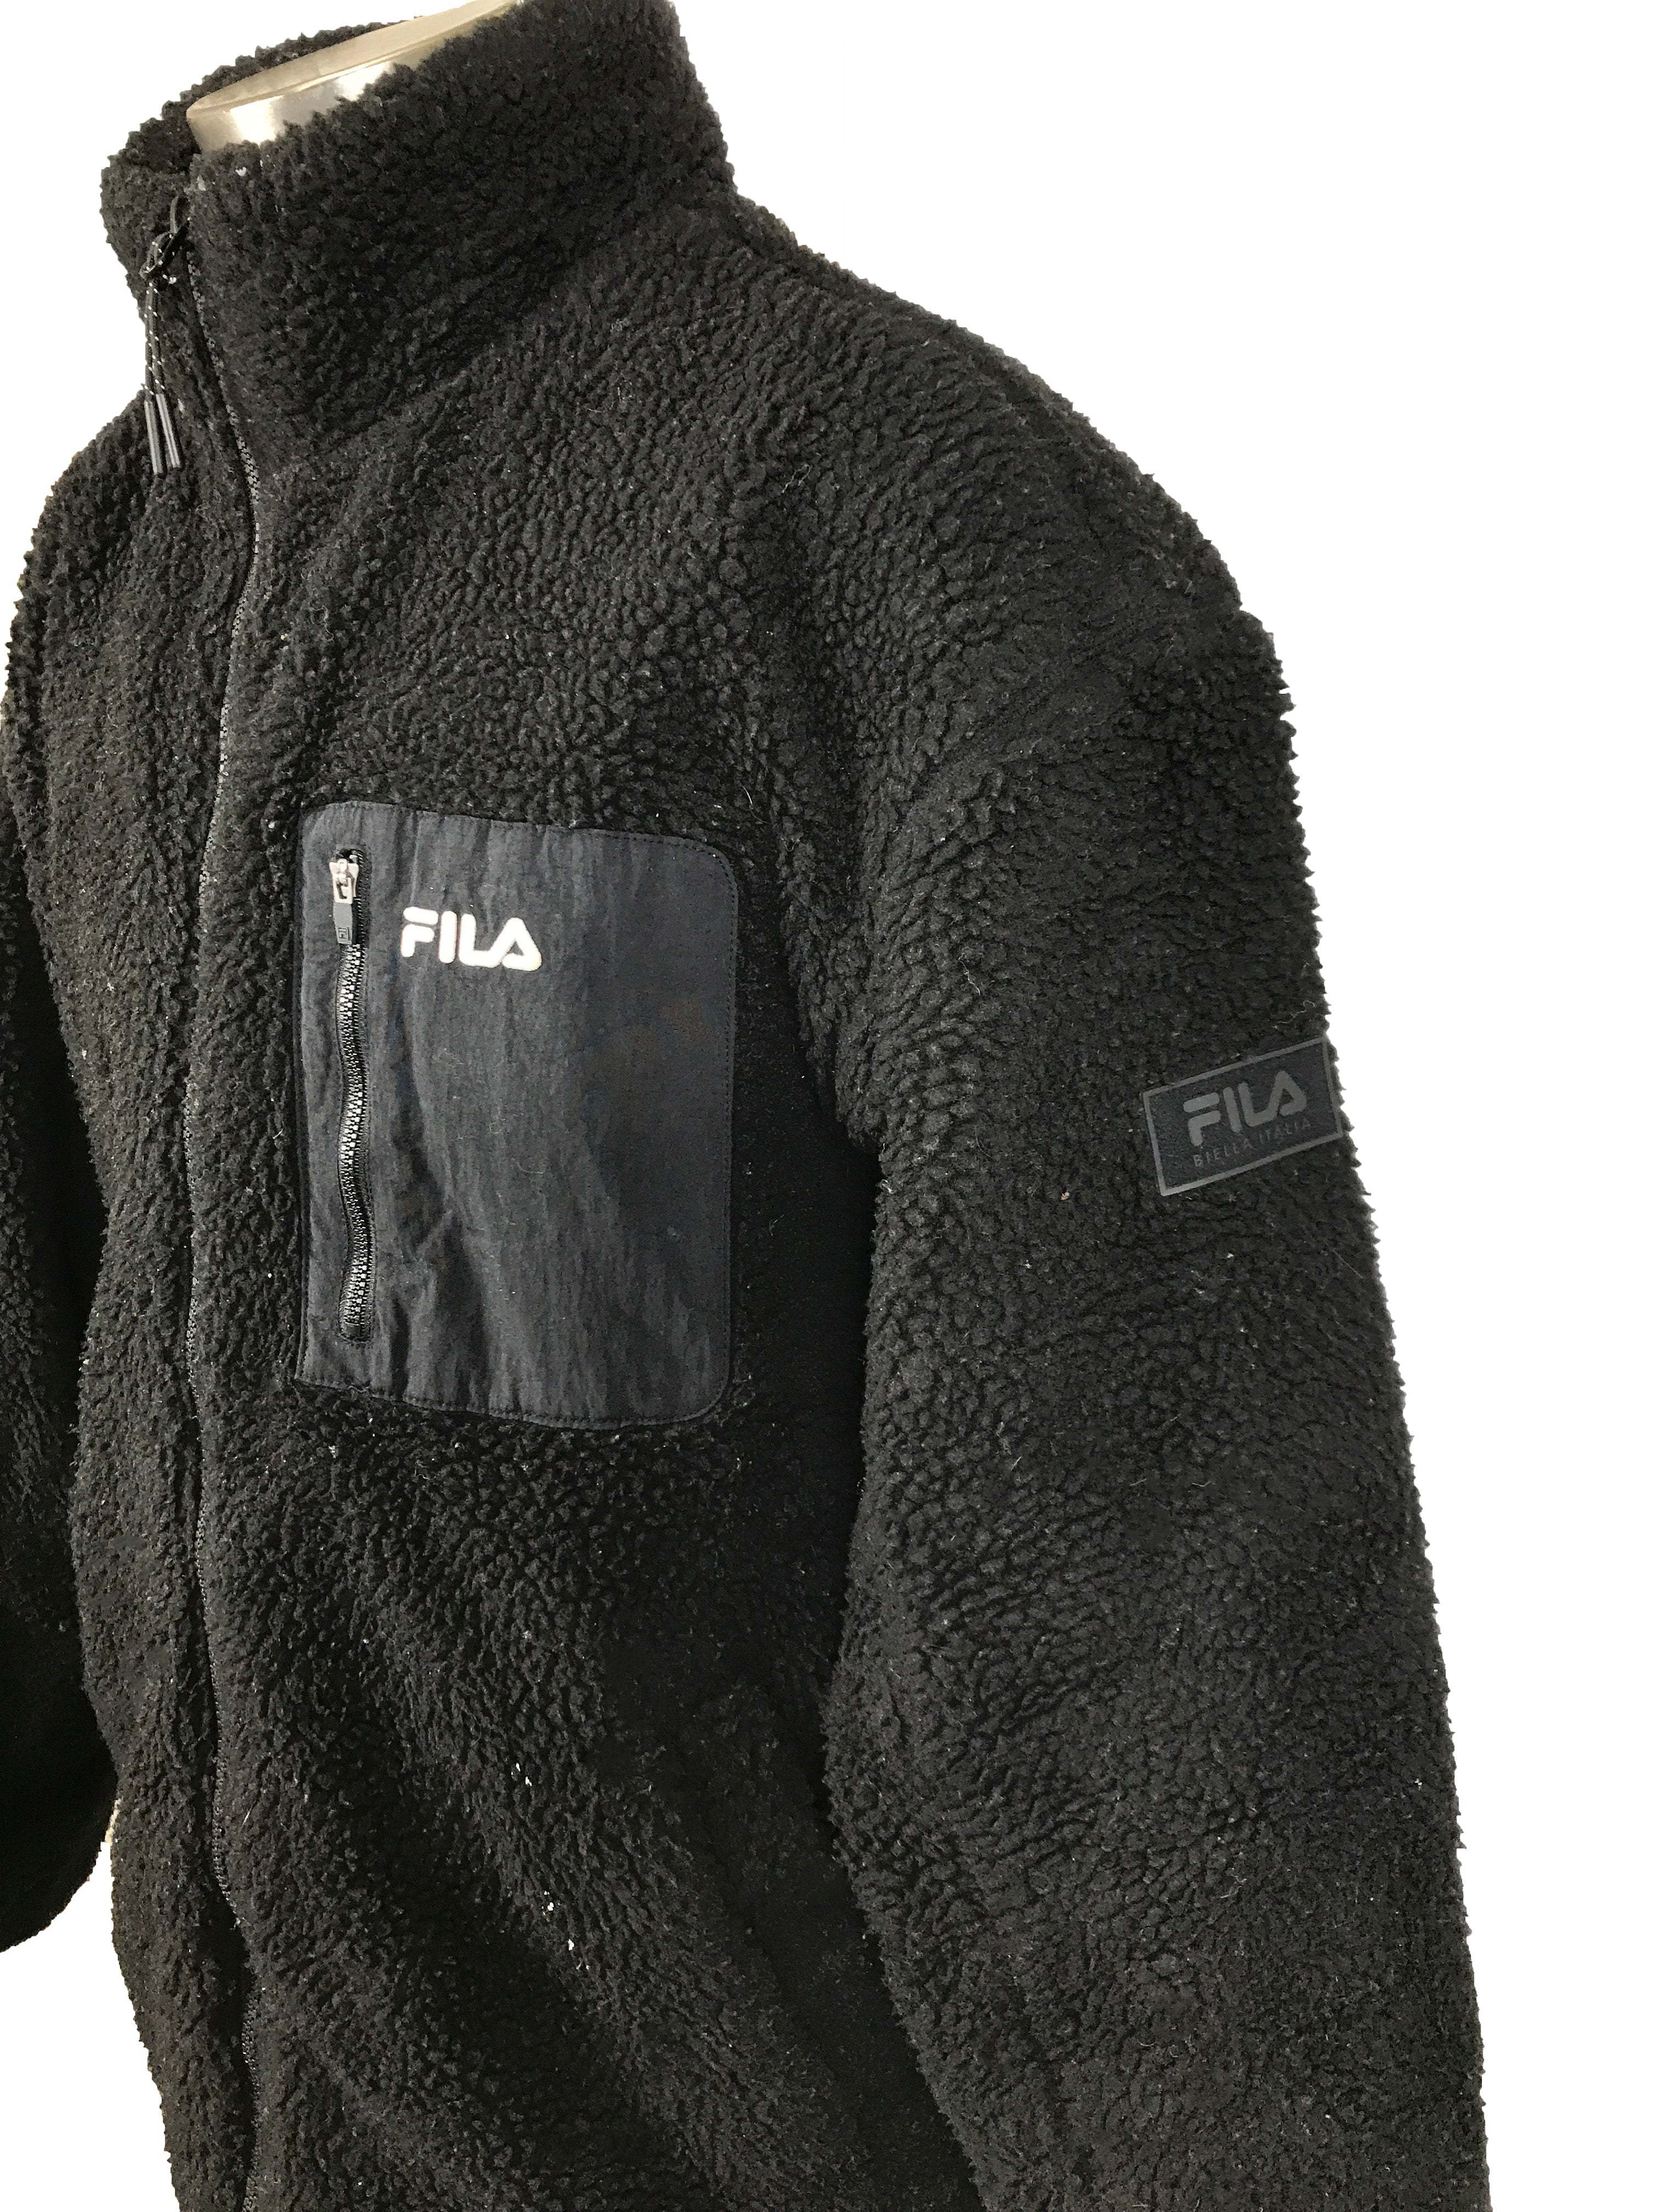 Fila Black Fleece Jacket Unisex Size X-Large